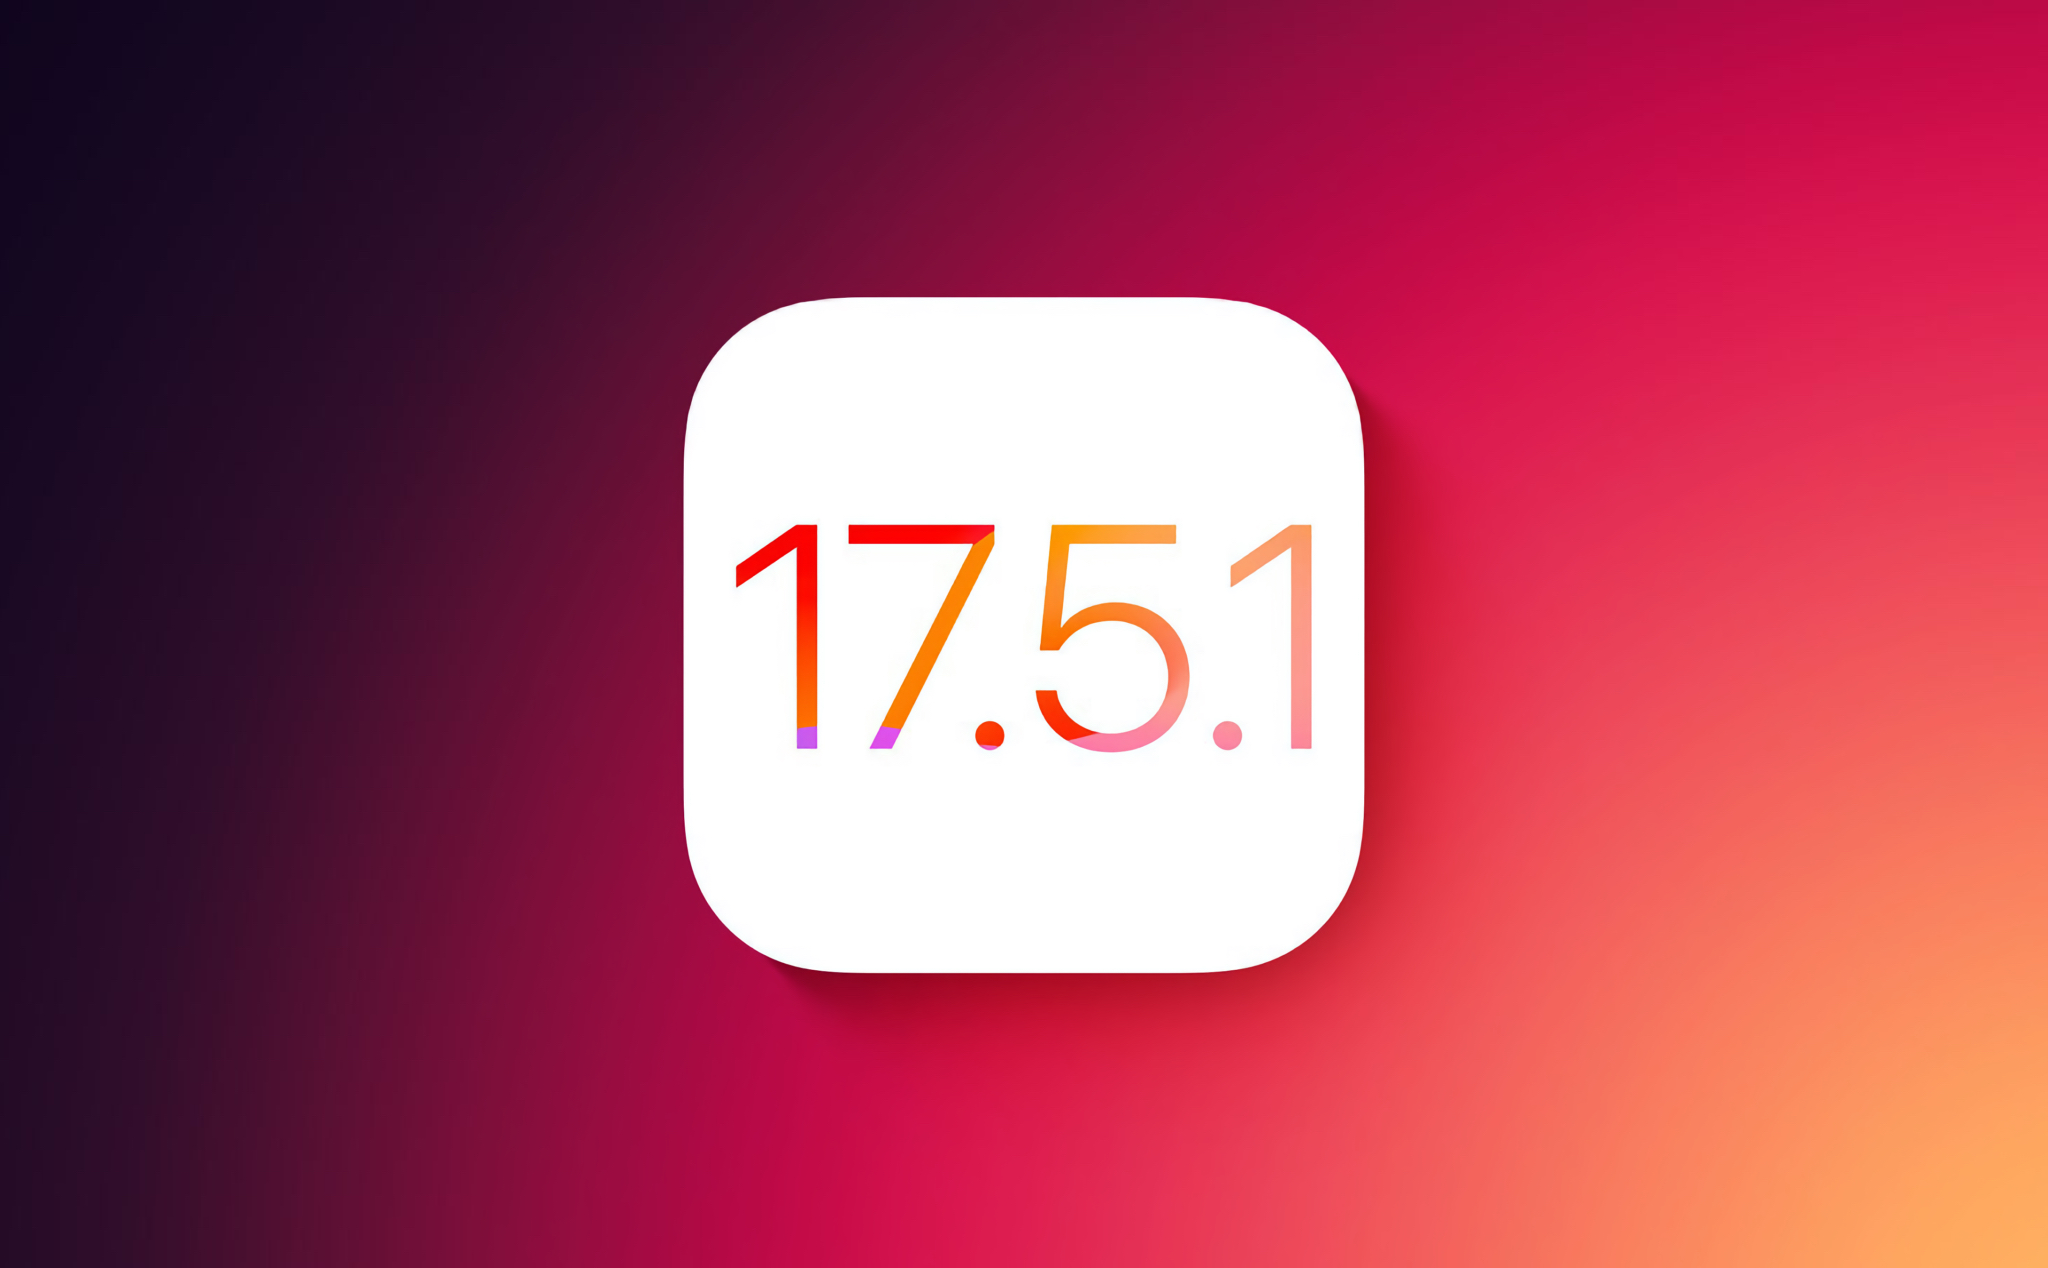 Apple phát hành iOS 17.5.1 để fix lỗi hình cũ xuất hiện lại trong Photos dù đã xoá